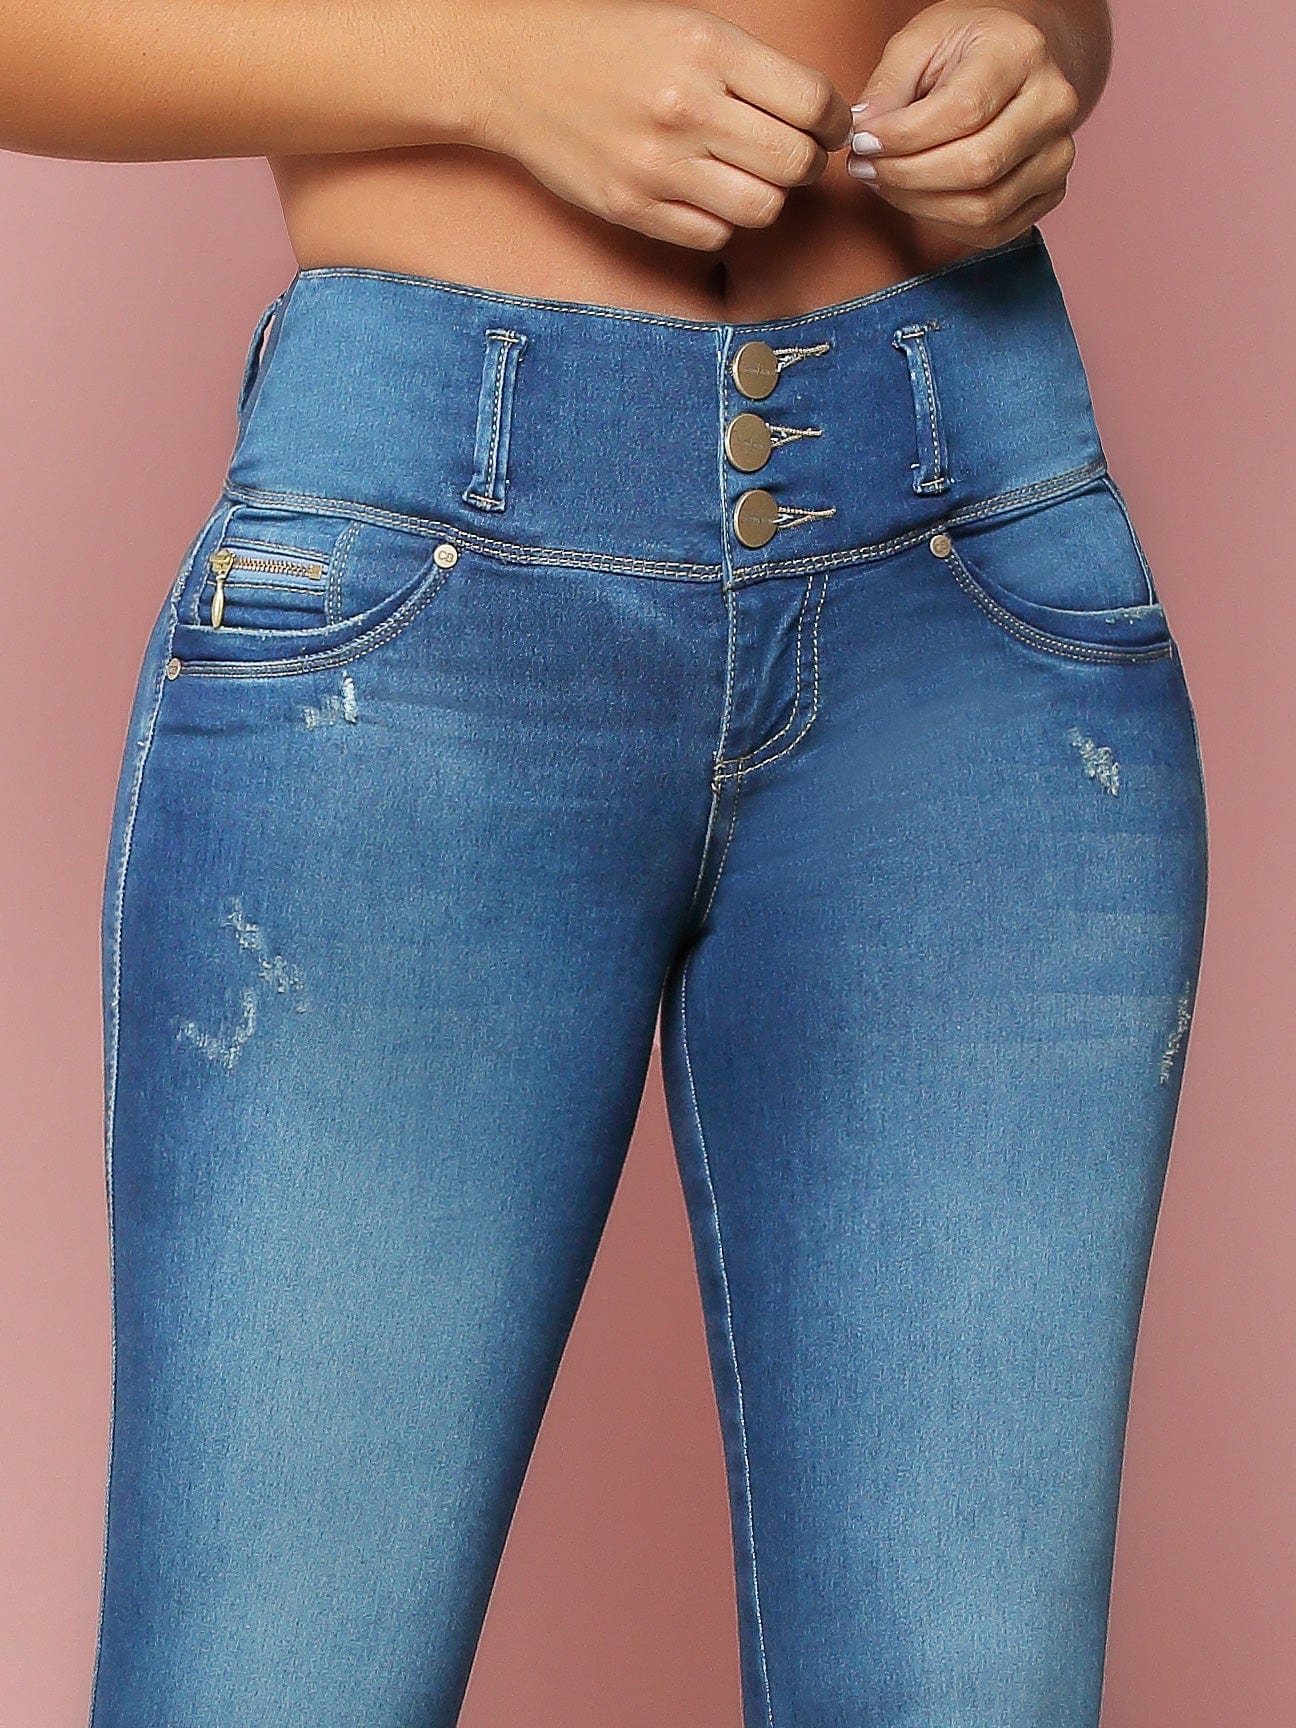 Lesly Shop - Jeans Levanta Cola 🤩 🍑 🔖 Control de abdomen